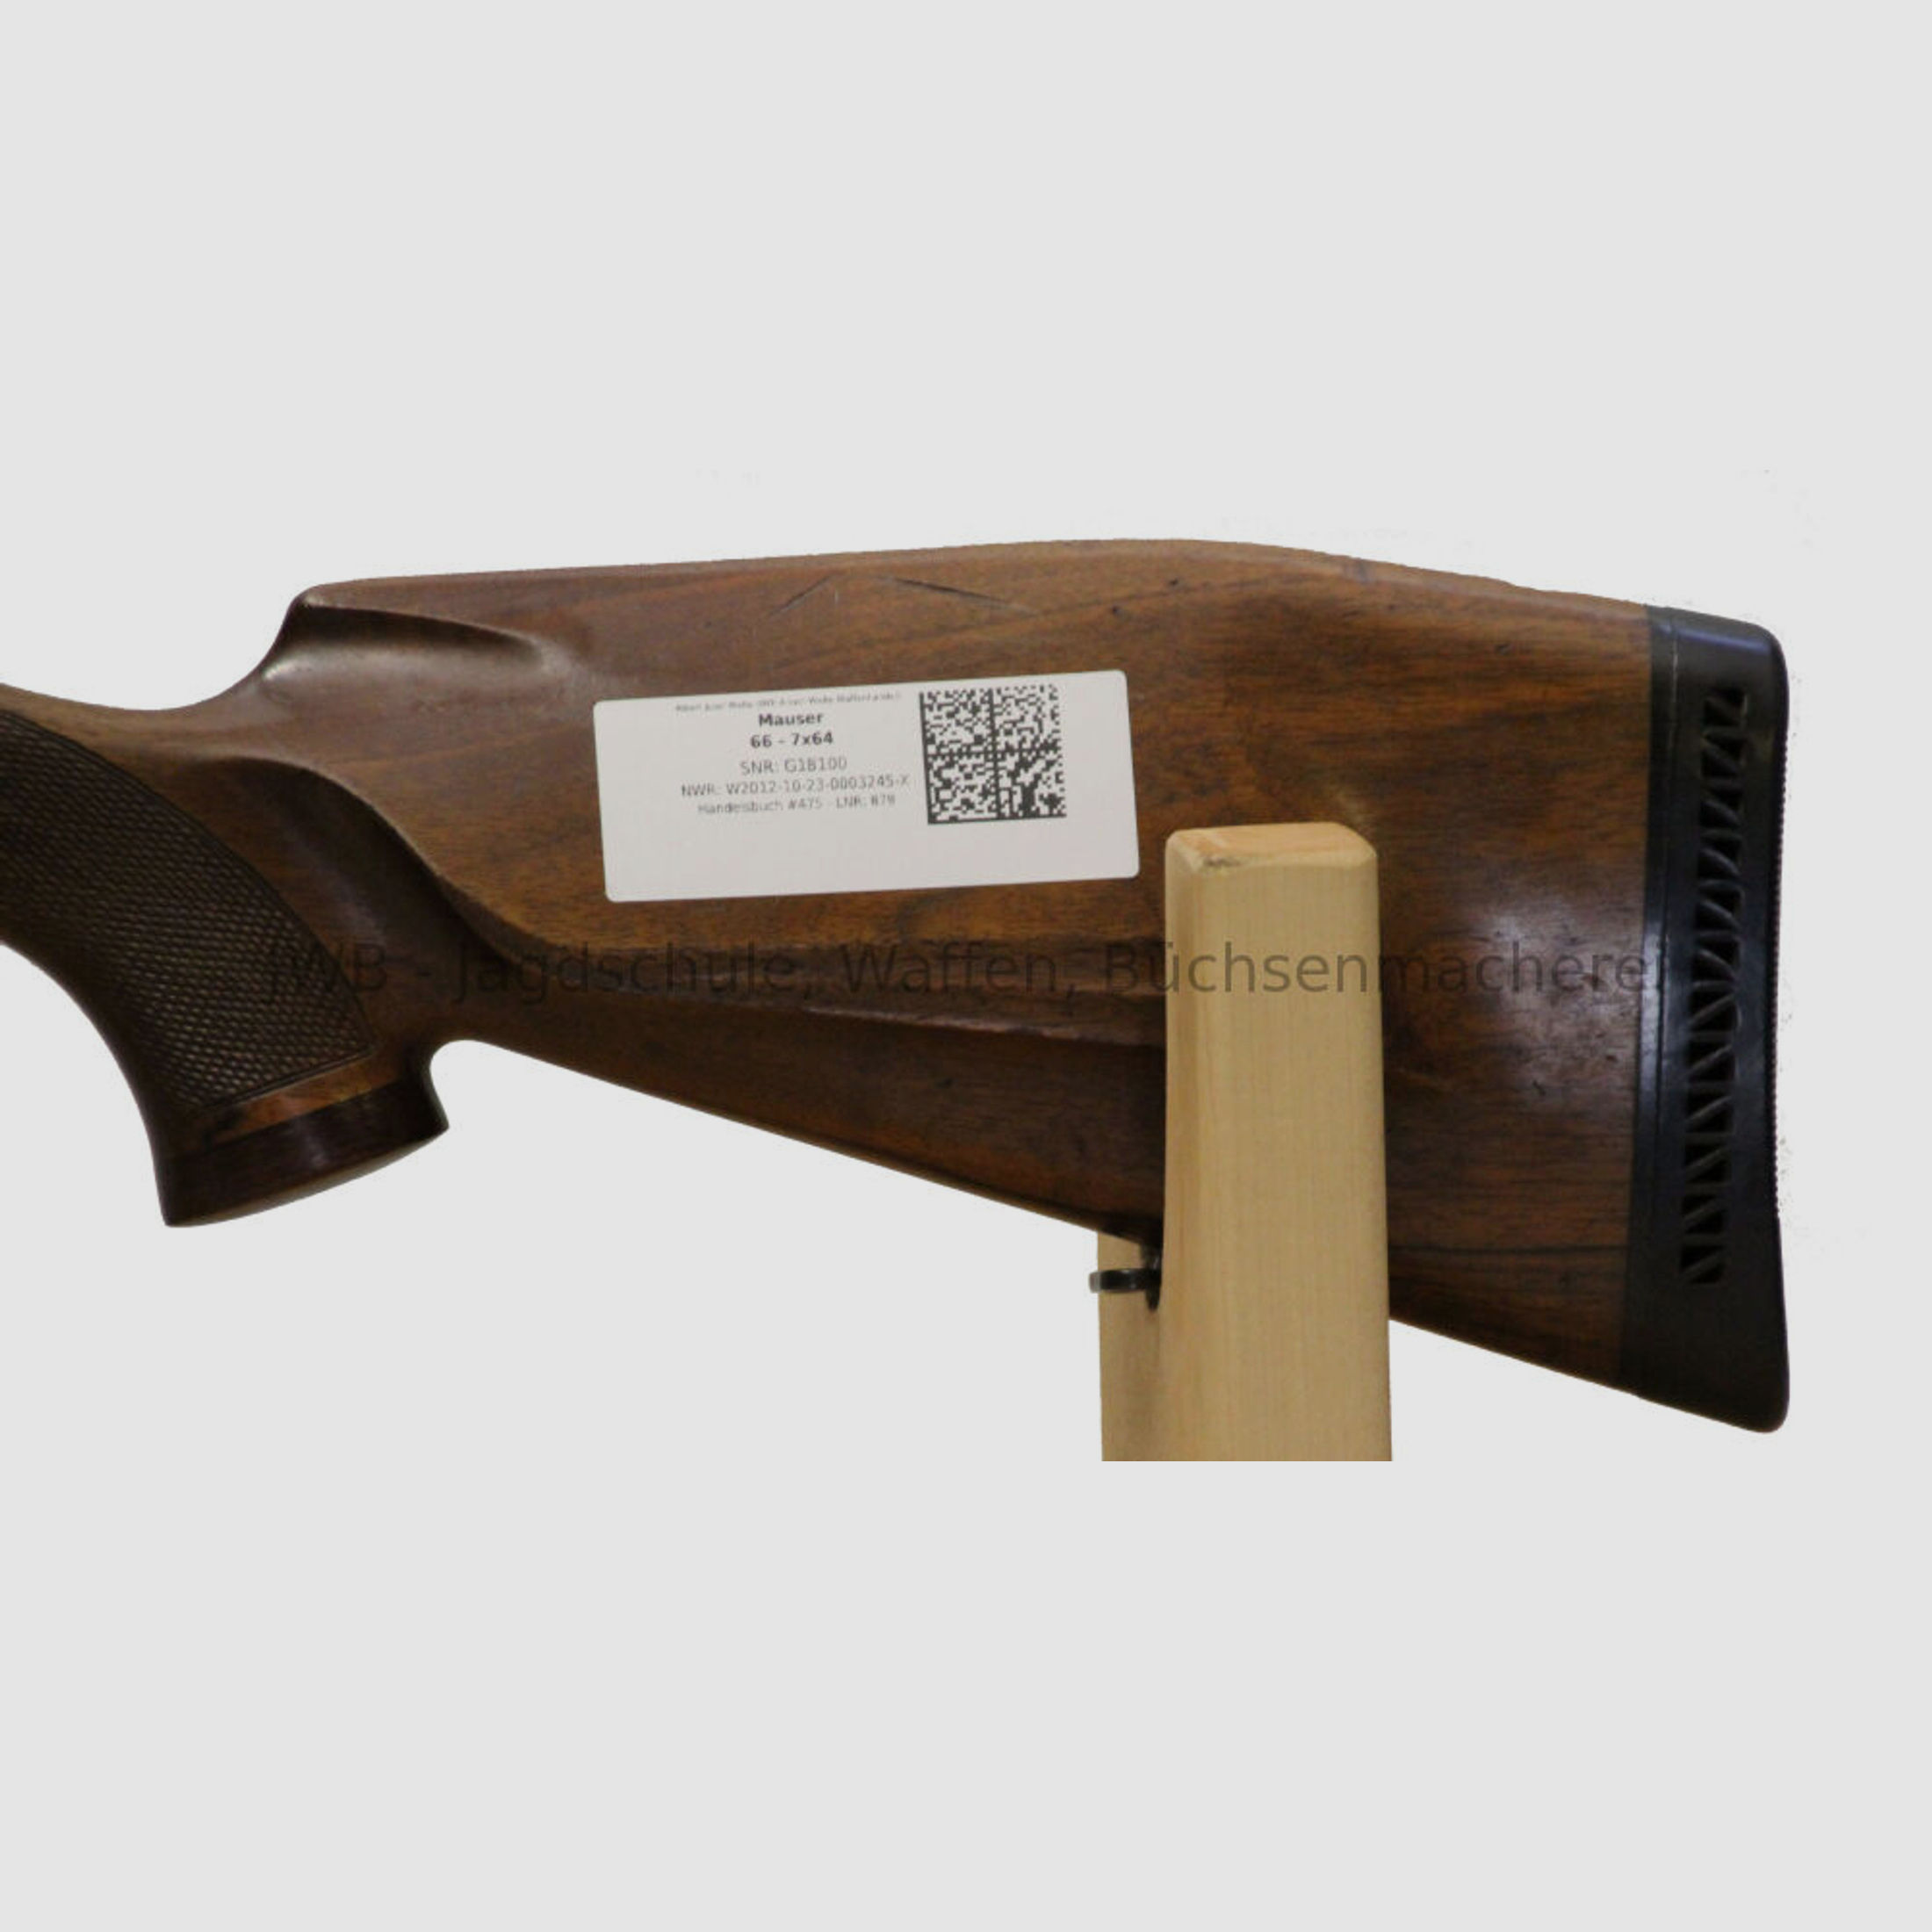 Mauser 66 mit Zeiss Diavari mit beleuchtetem Absehen	 7x64